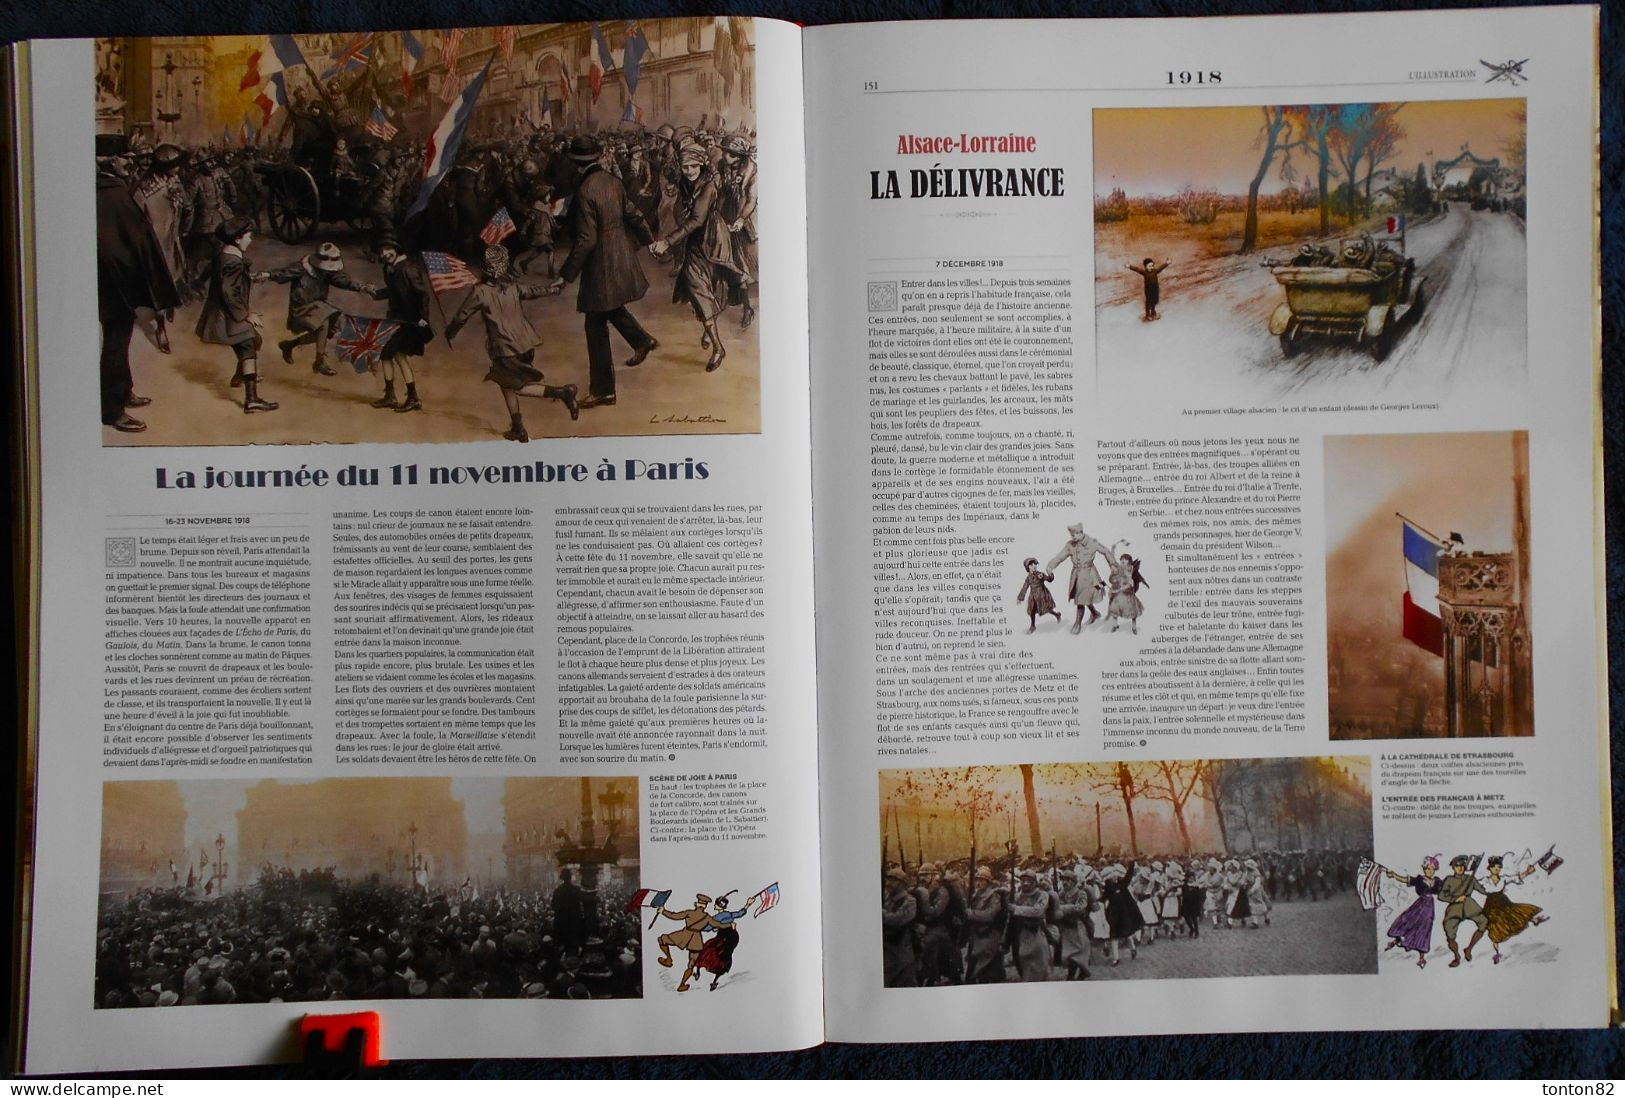 L'ILLUSTRATION - Le plus grand journal de l'époque - C'ÉTAIT LA FRANCE - Telle que les Français l'ont découverte - 2010